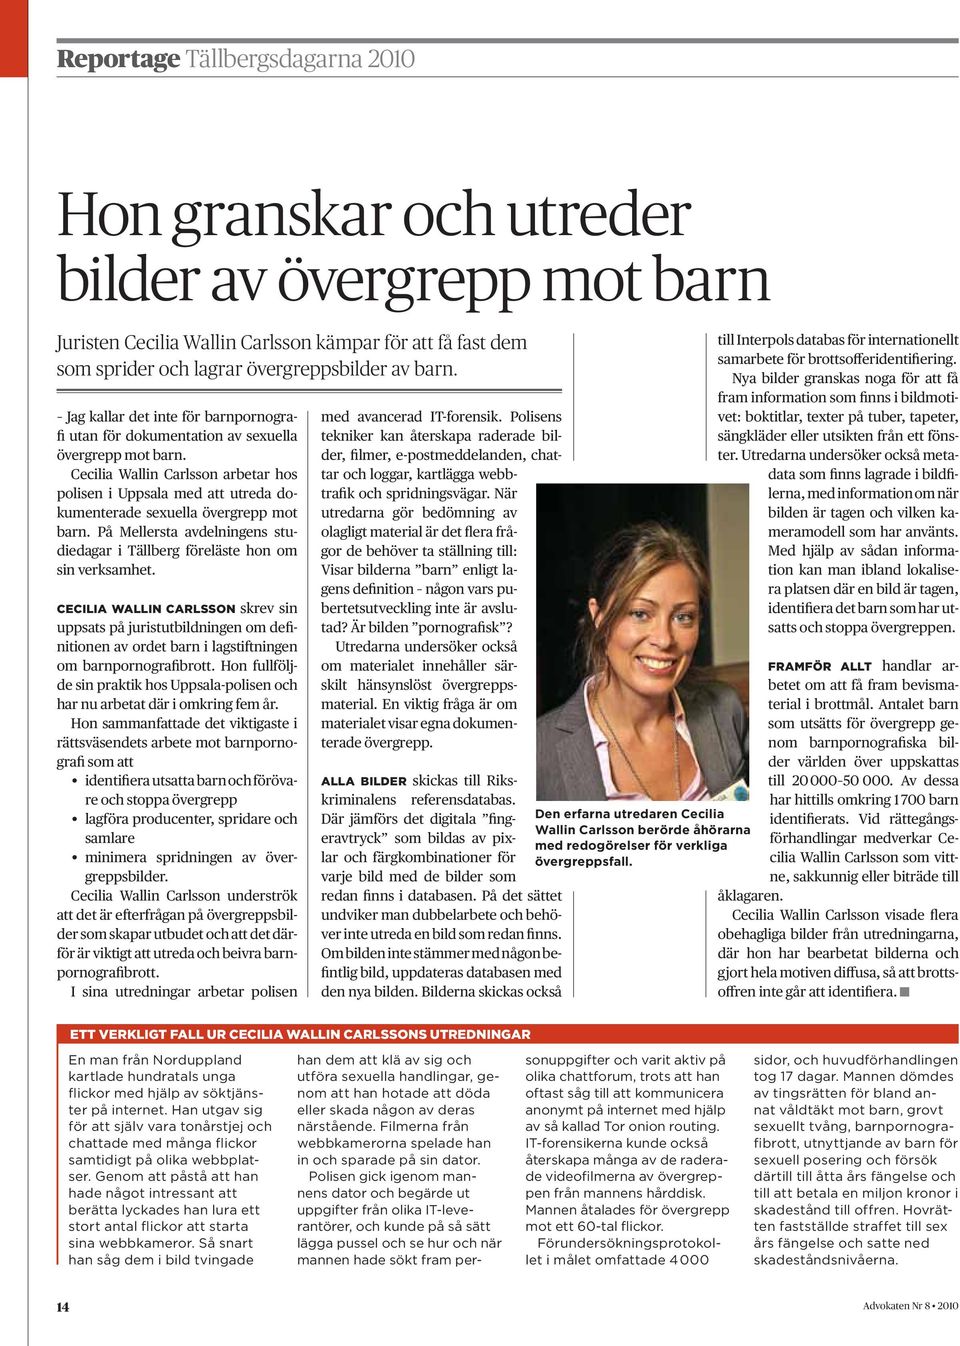 Cecilia Wallin Carlsson arbetar hos polisen i Uppsala med att utreda dokumenterade sexuella övergrepp mot barn. På Mellersta avdelningens studiedagar i Tällberg föreläste hon om sin verksamhet.